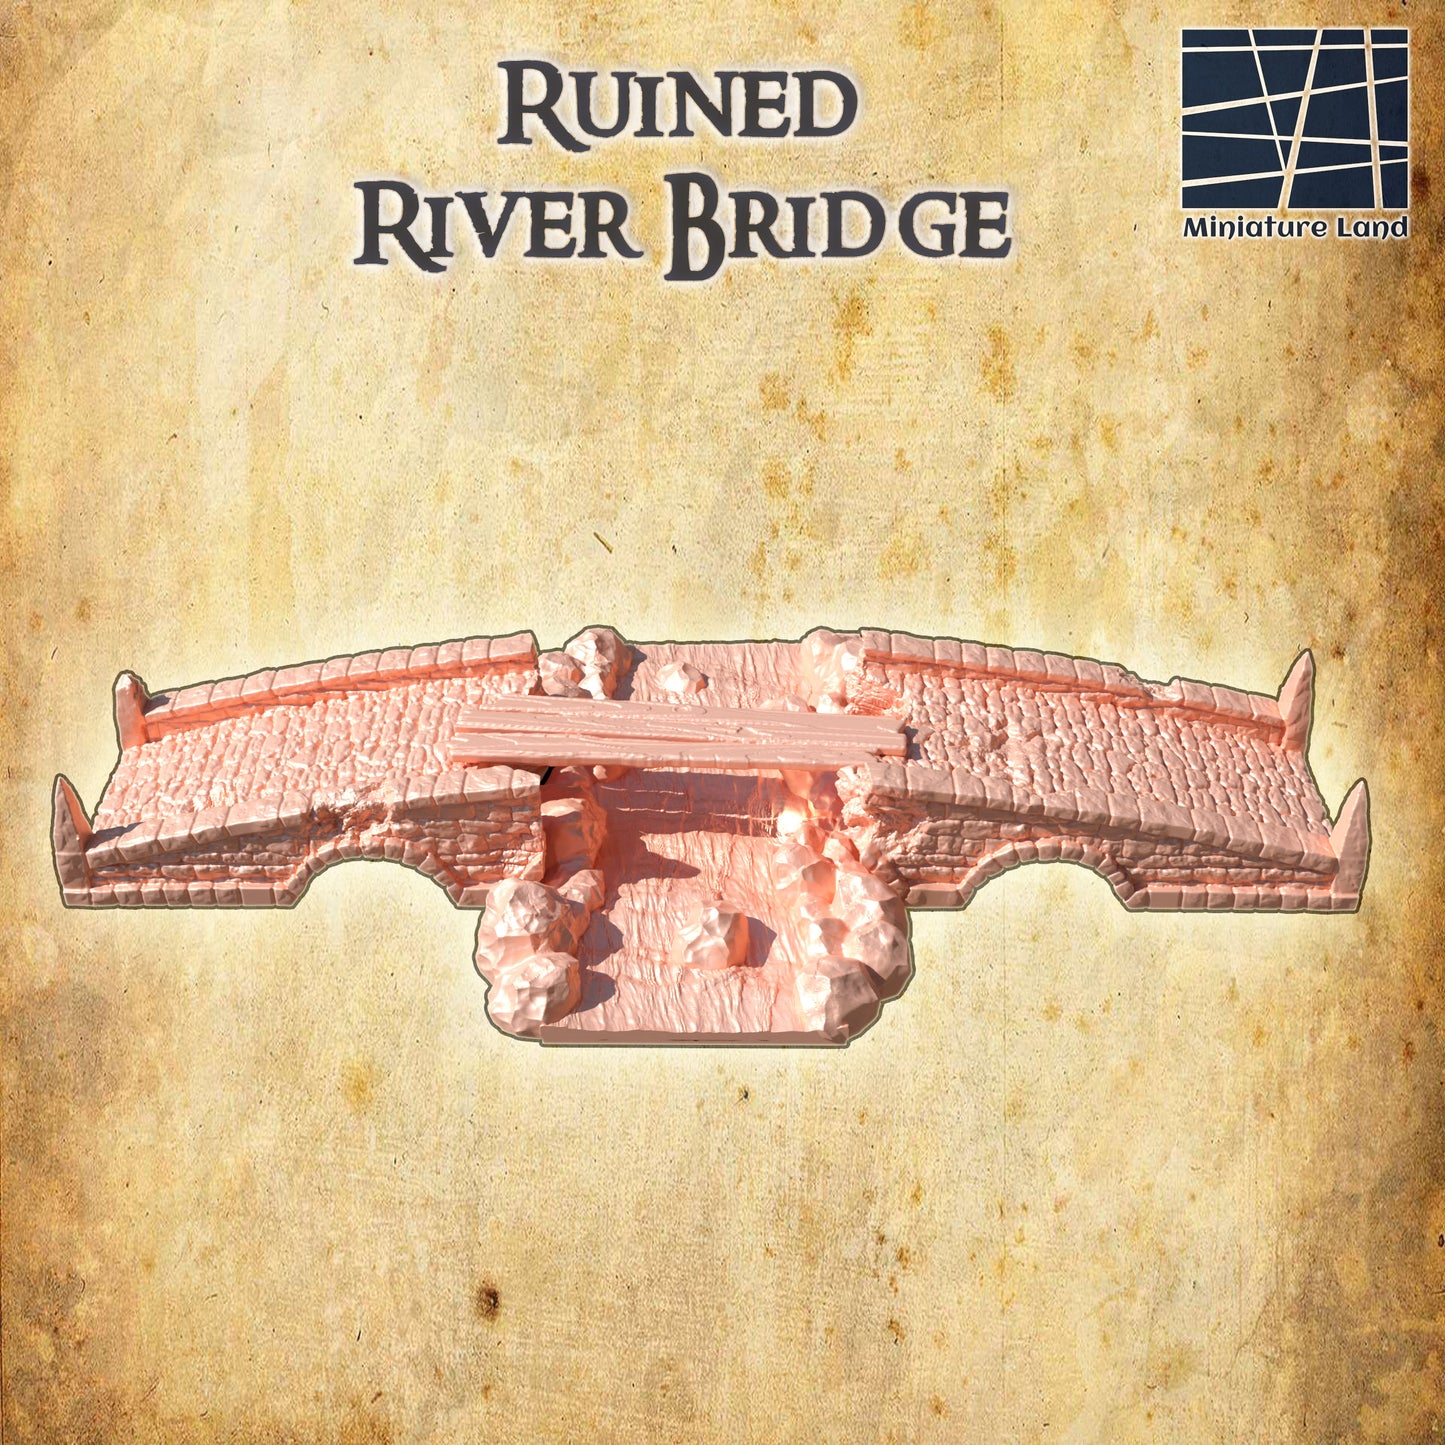 Ruined River Bridge, creek bed